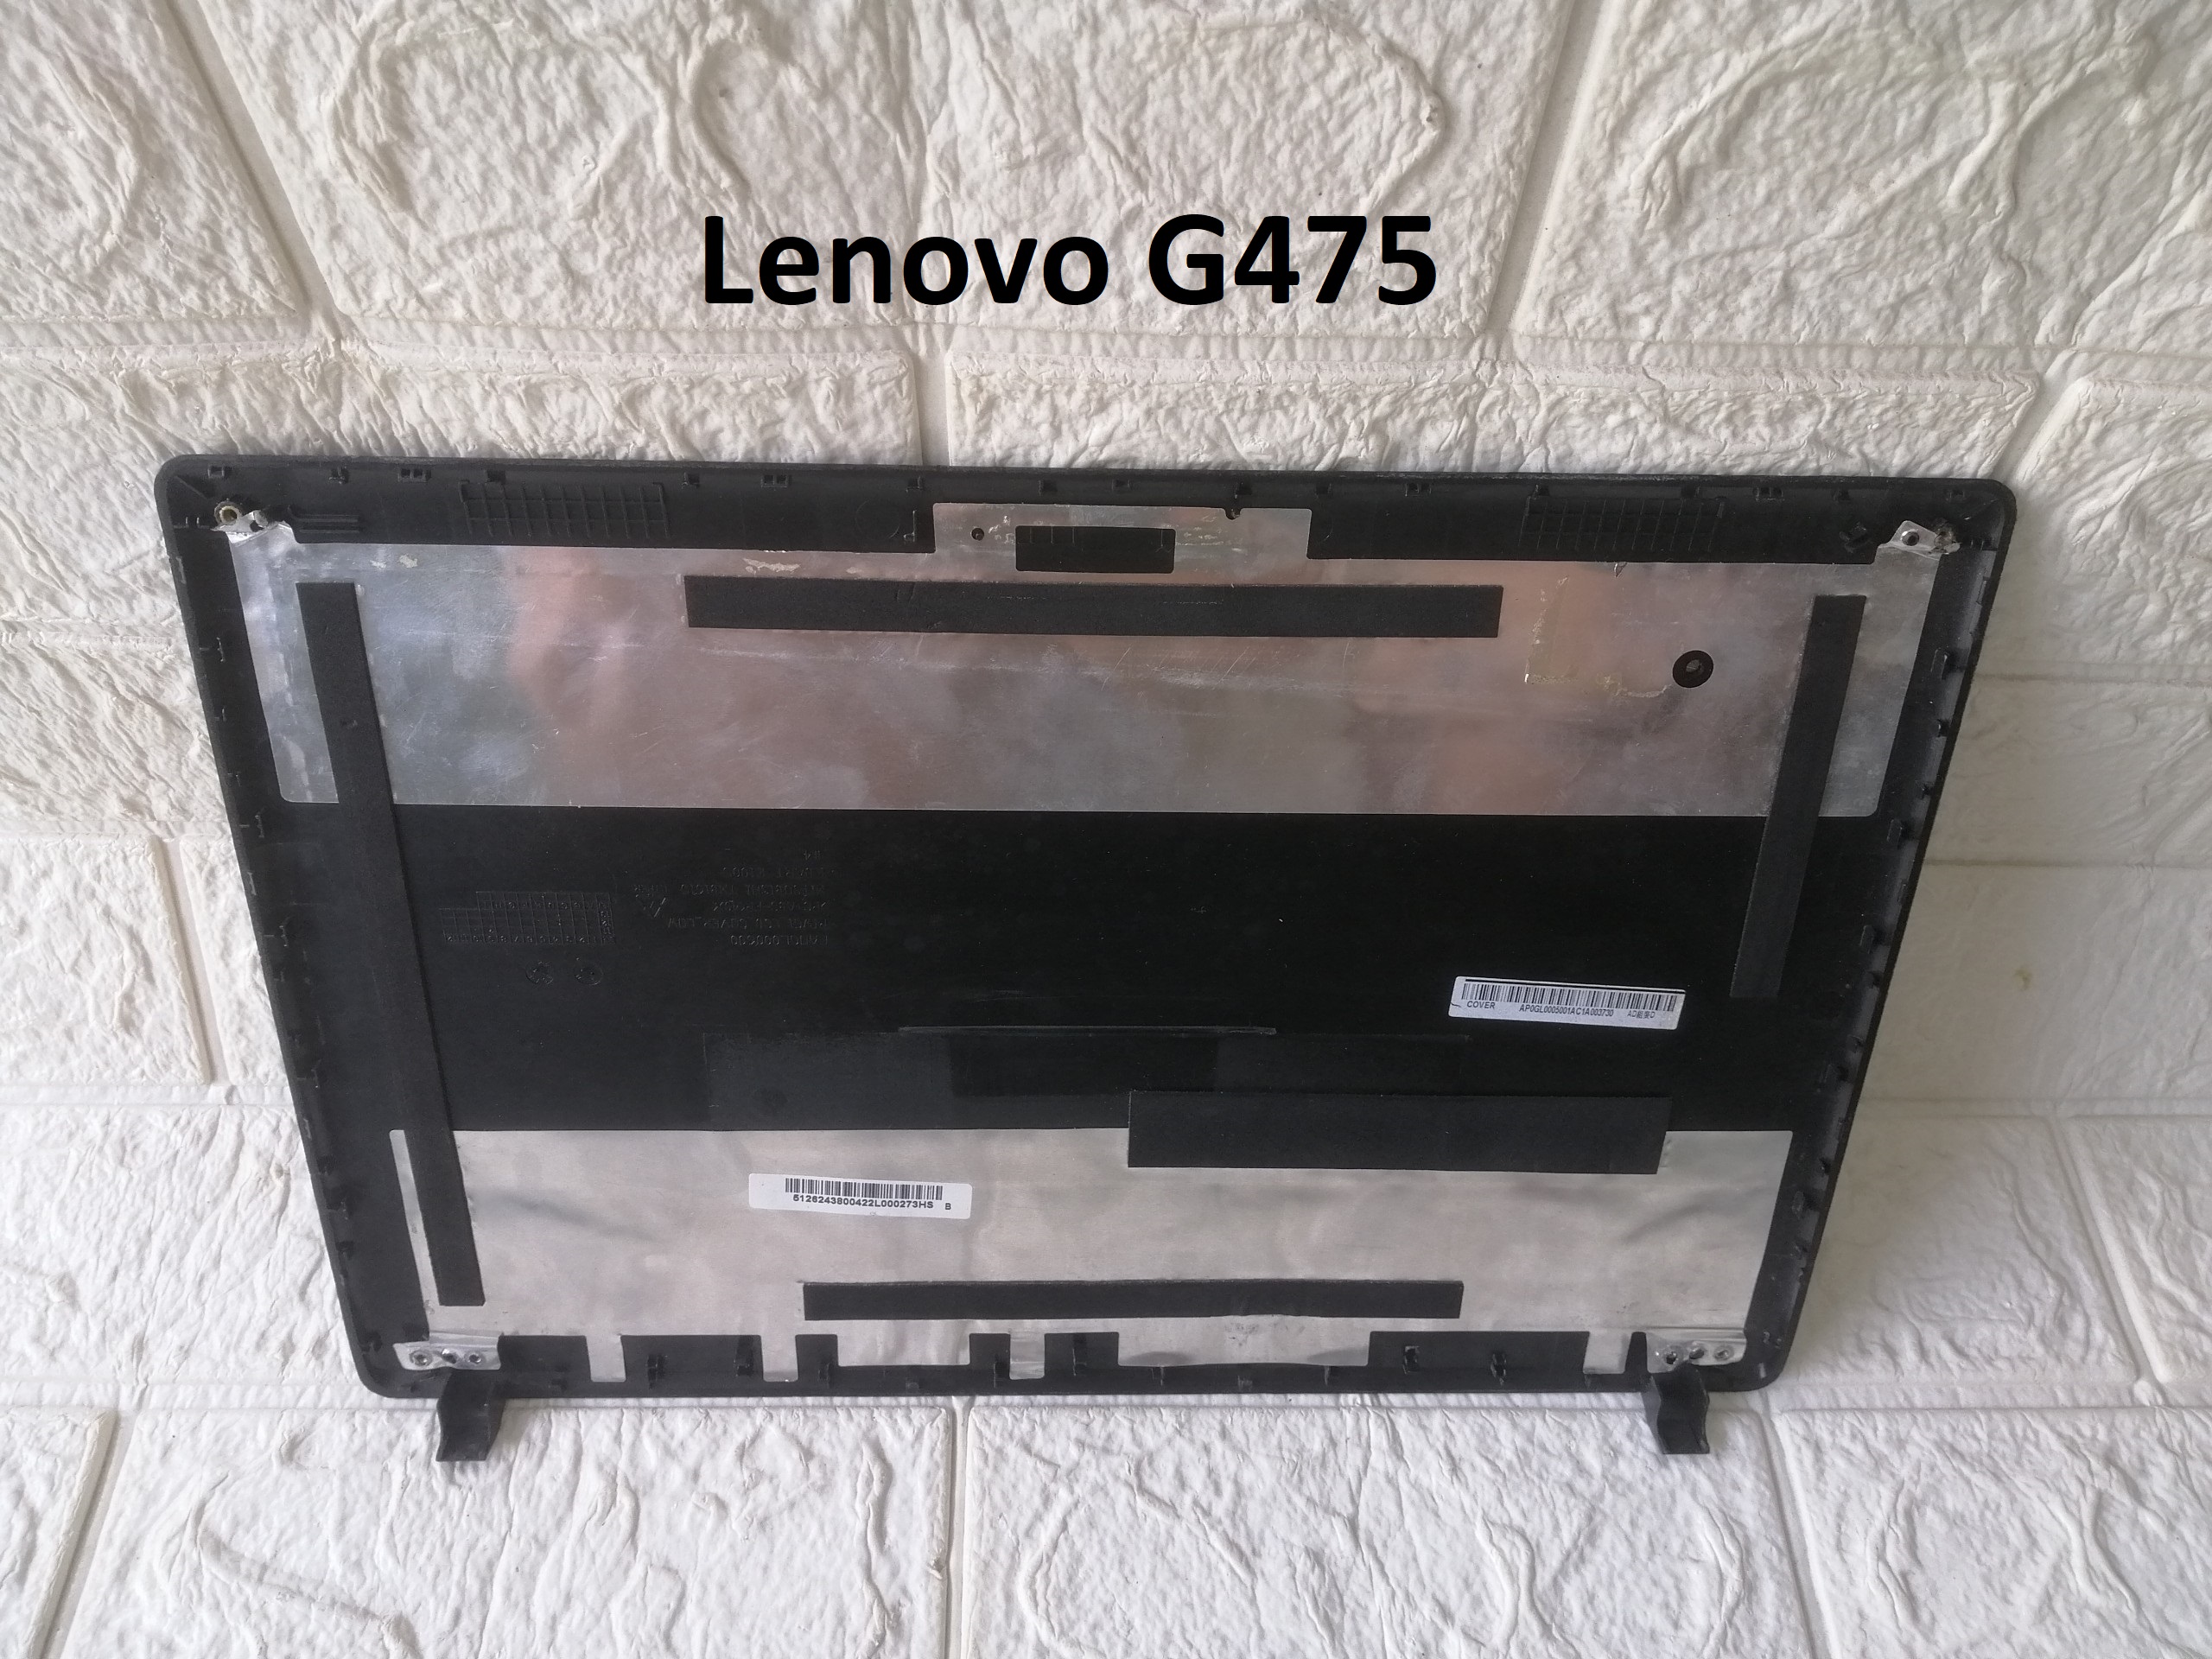 MẶT A VỎ LAPTOP Lenovo G475